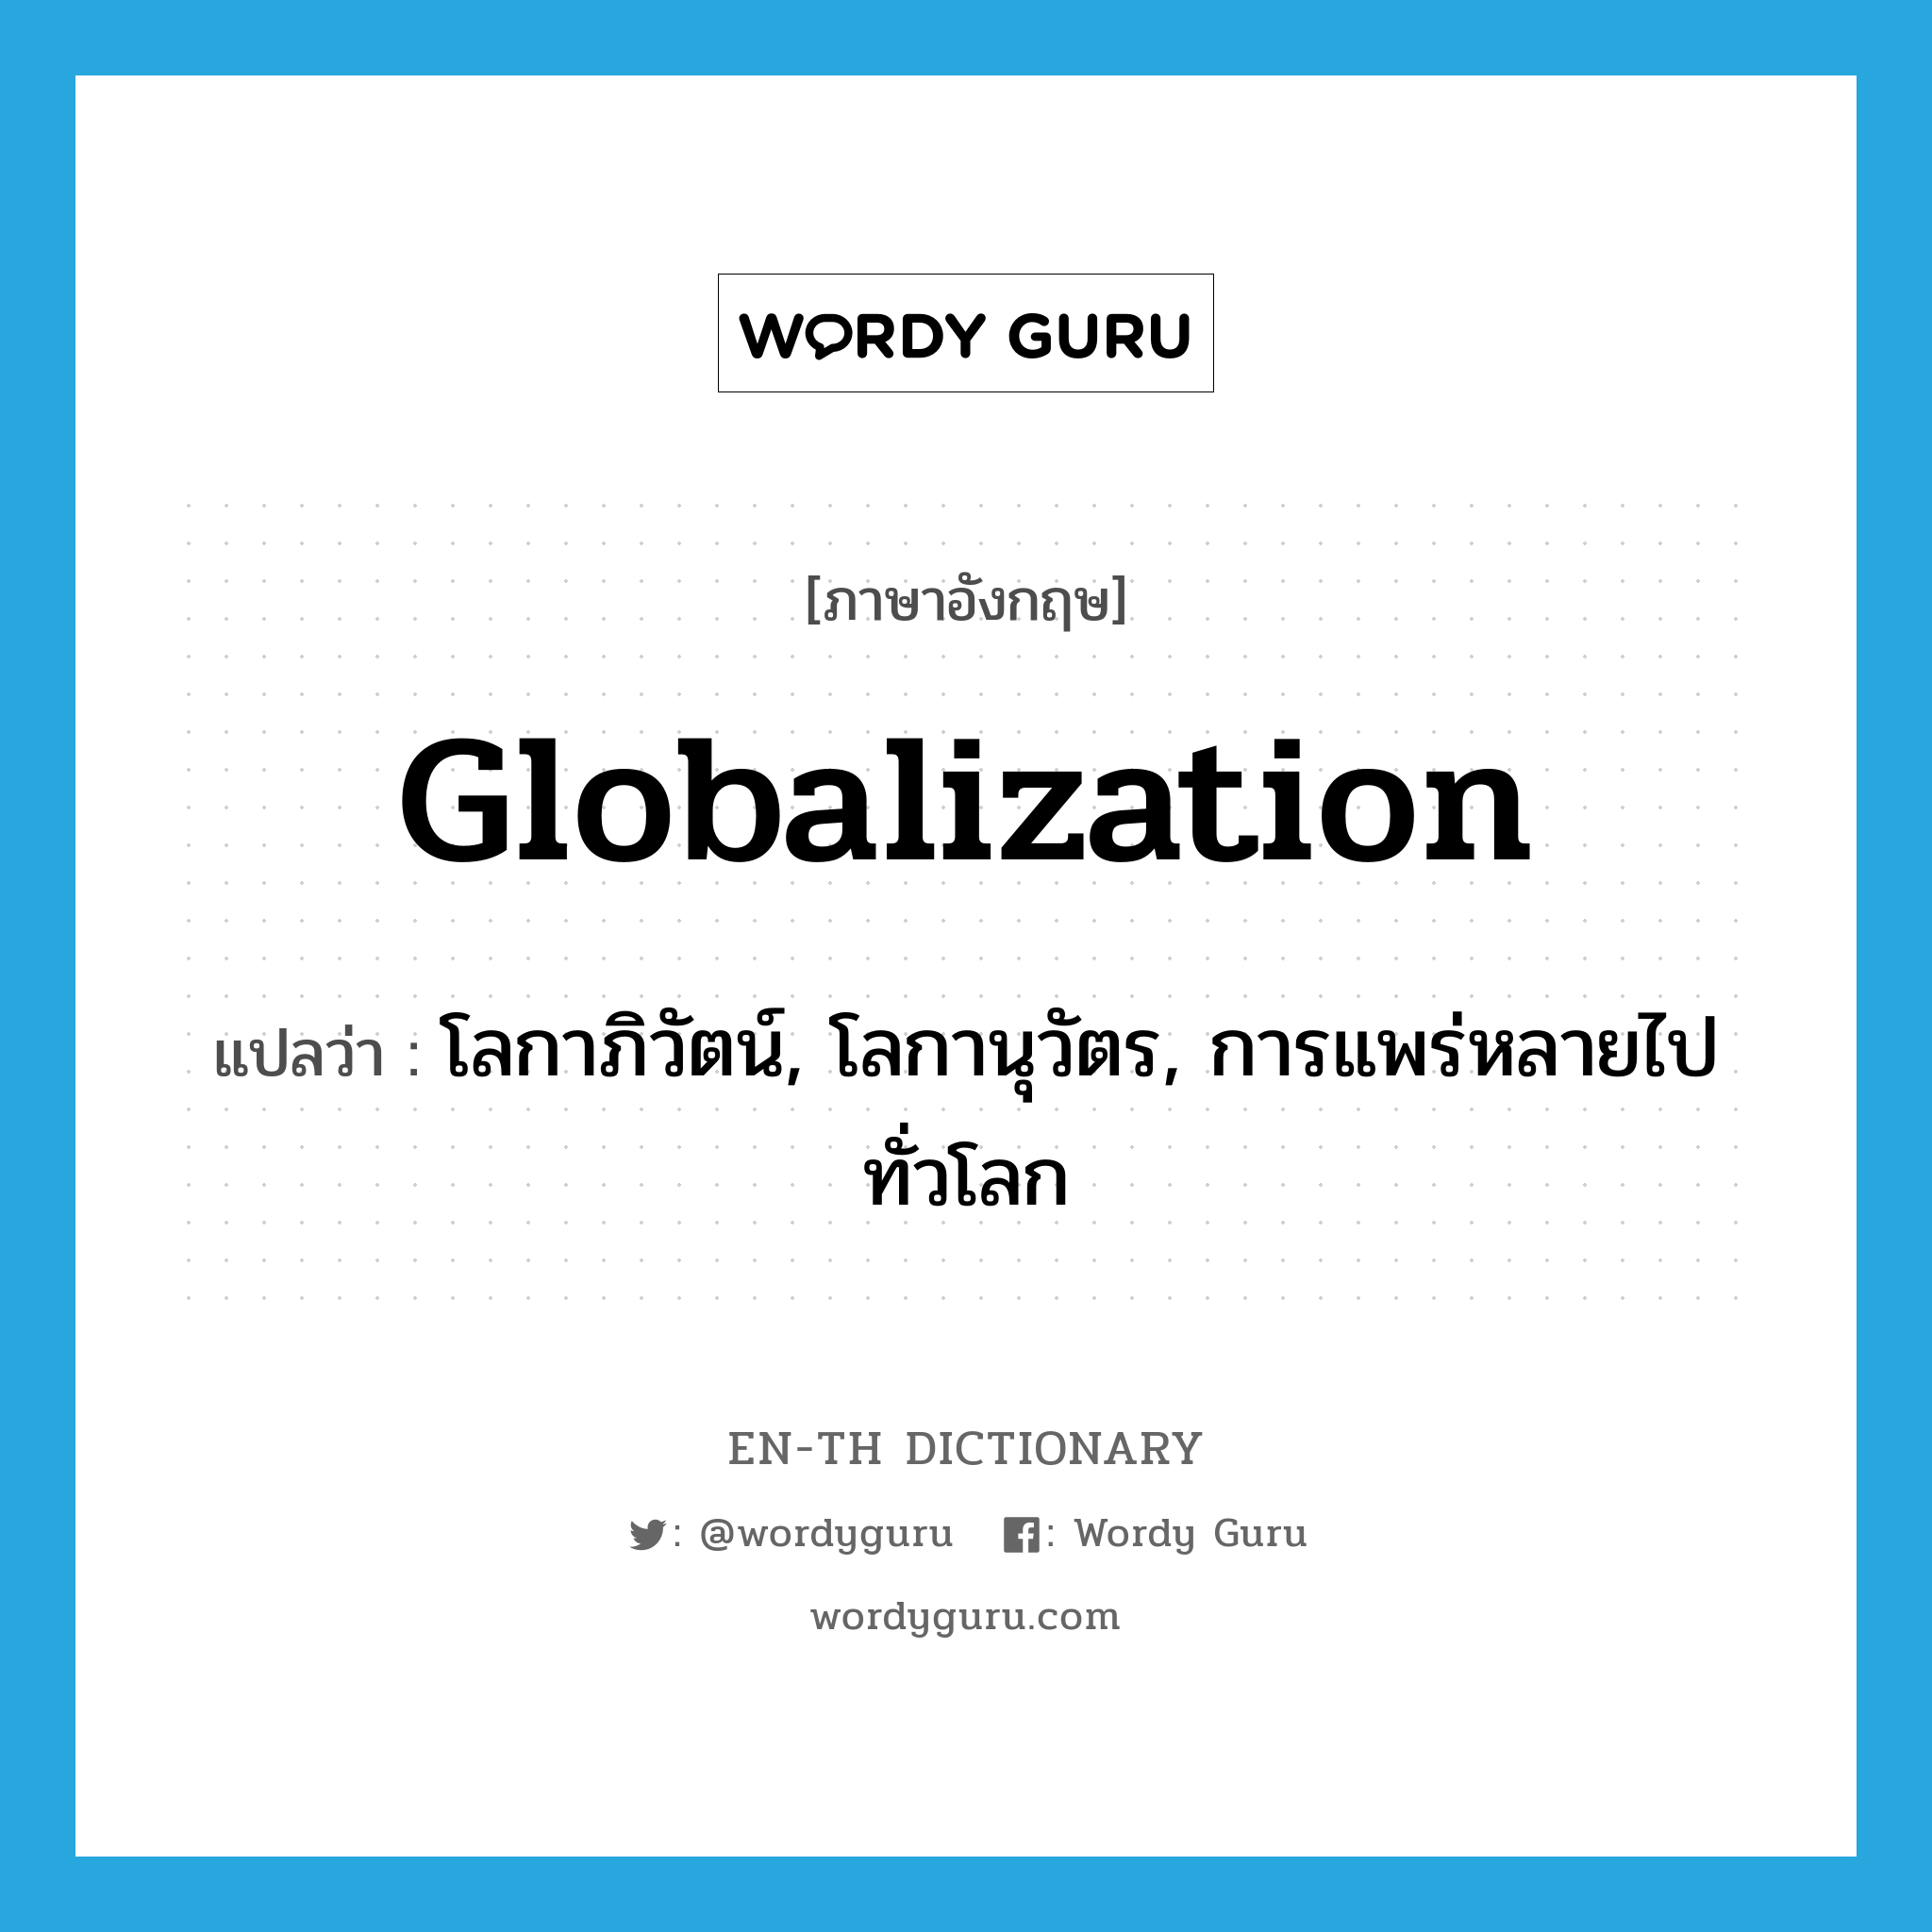 โลกาภิวัตน์, โลกานุวัตร, การแพร่หลายไปทั่วโลก ภาษาอังกฤษ?, คำศัพท์ภาษาอังกฤษ โลกาภิวัตน์, โลกานุวัตร, การแพร่หลายไปทั่วโลก แปลว่า globalization ประเภท N หมวด N